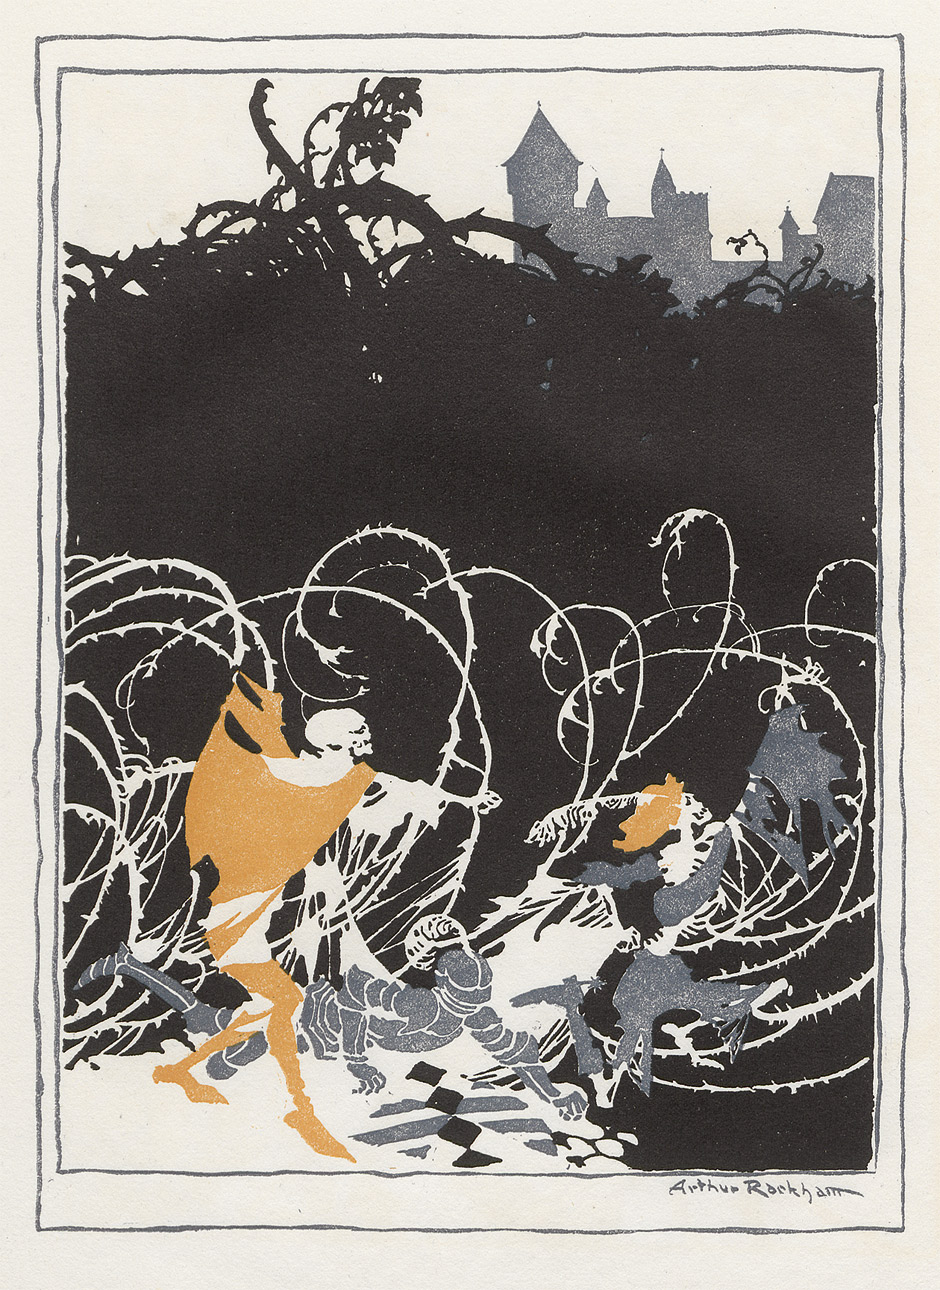 Lot 3363, Auction  115, Perrault, Charles und Rackham, Arthur - Illustr., La belle au bois dormant